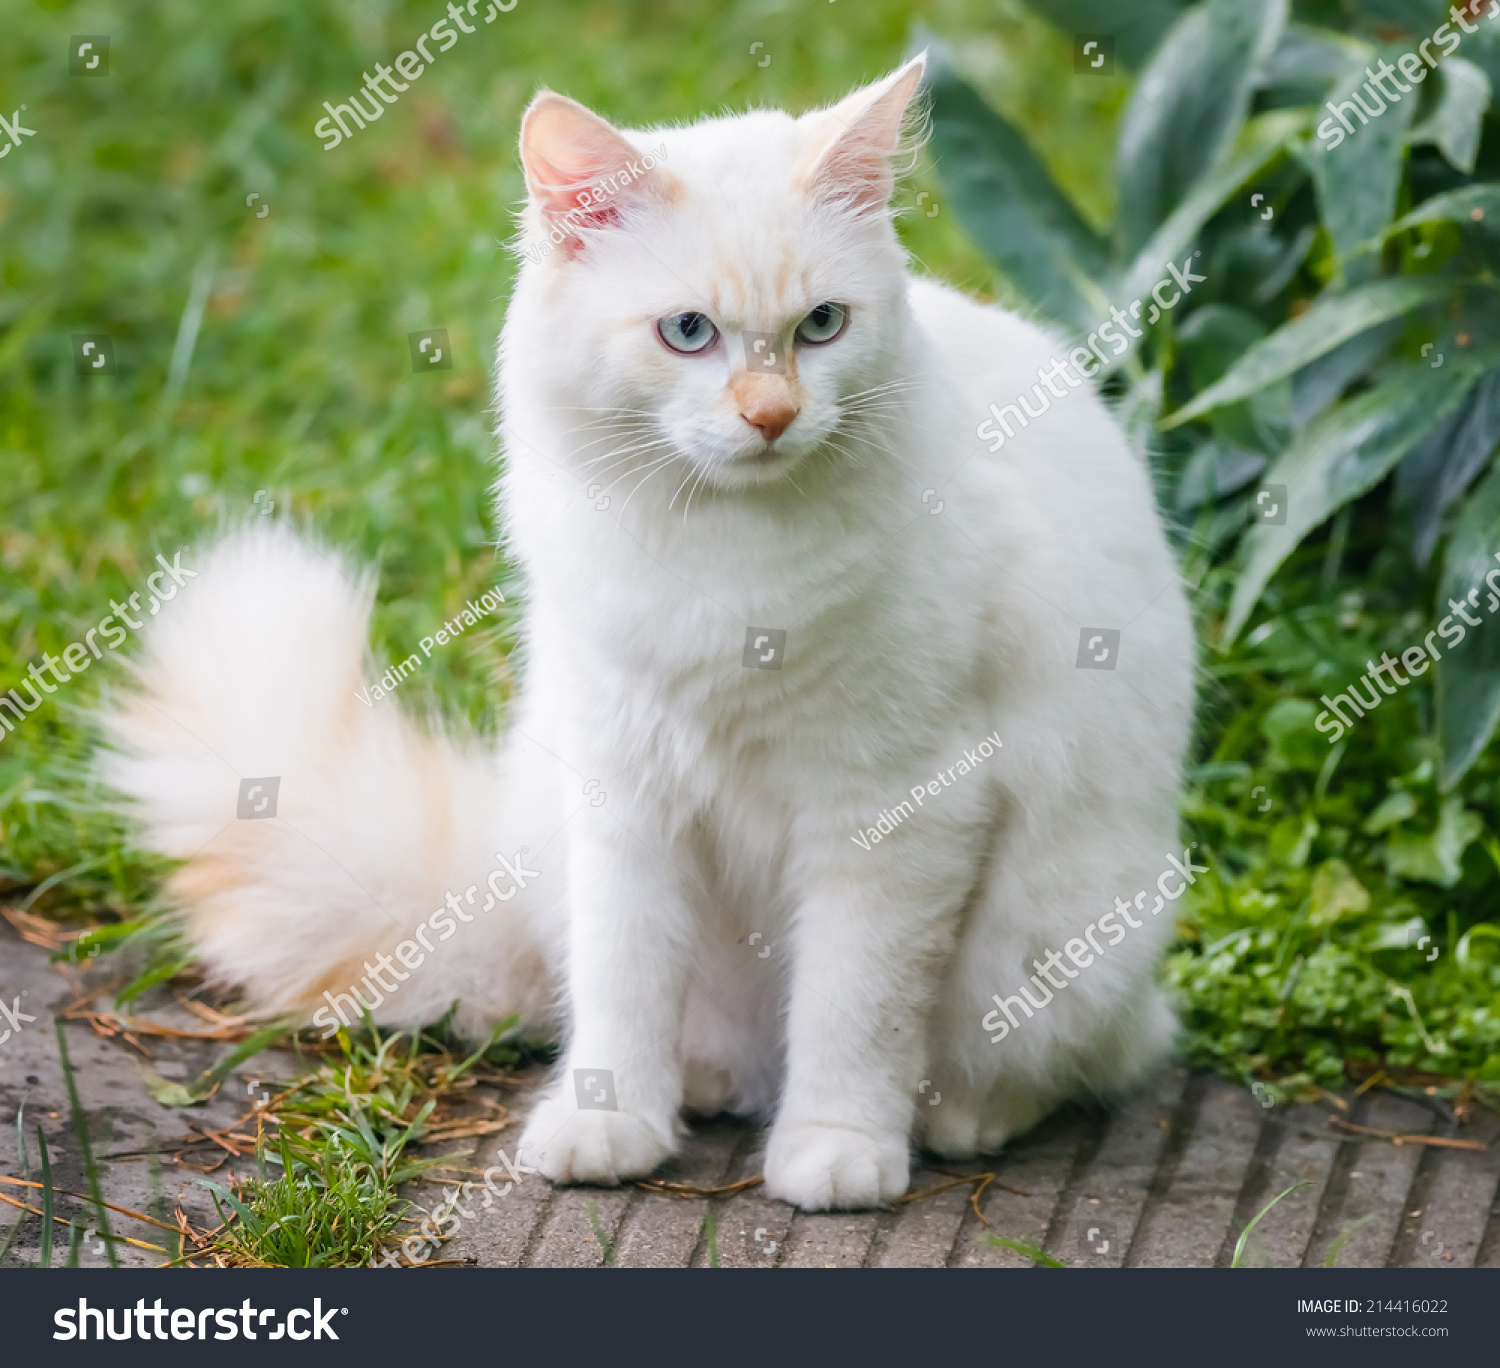 Как называется белая порода кошек. Сибирская ангорская кошка белая. Турецкая ангорская кошка. Турецкая ангора биколор. Белый ангорский кот.